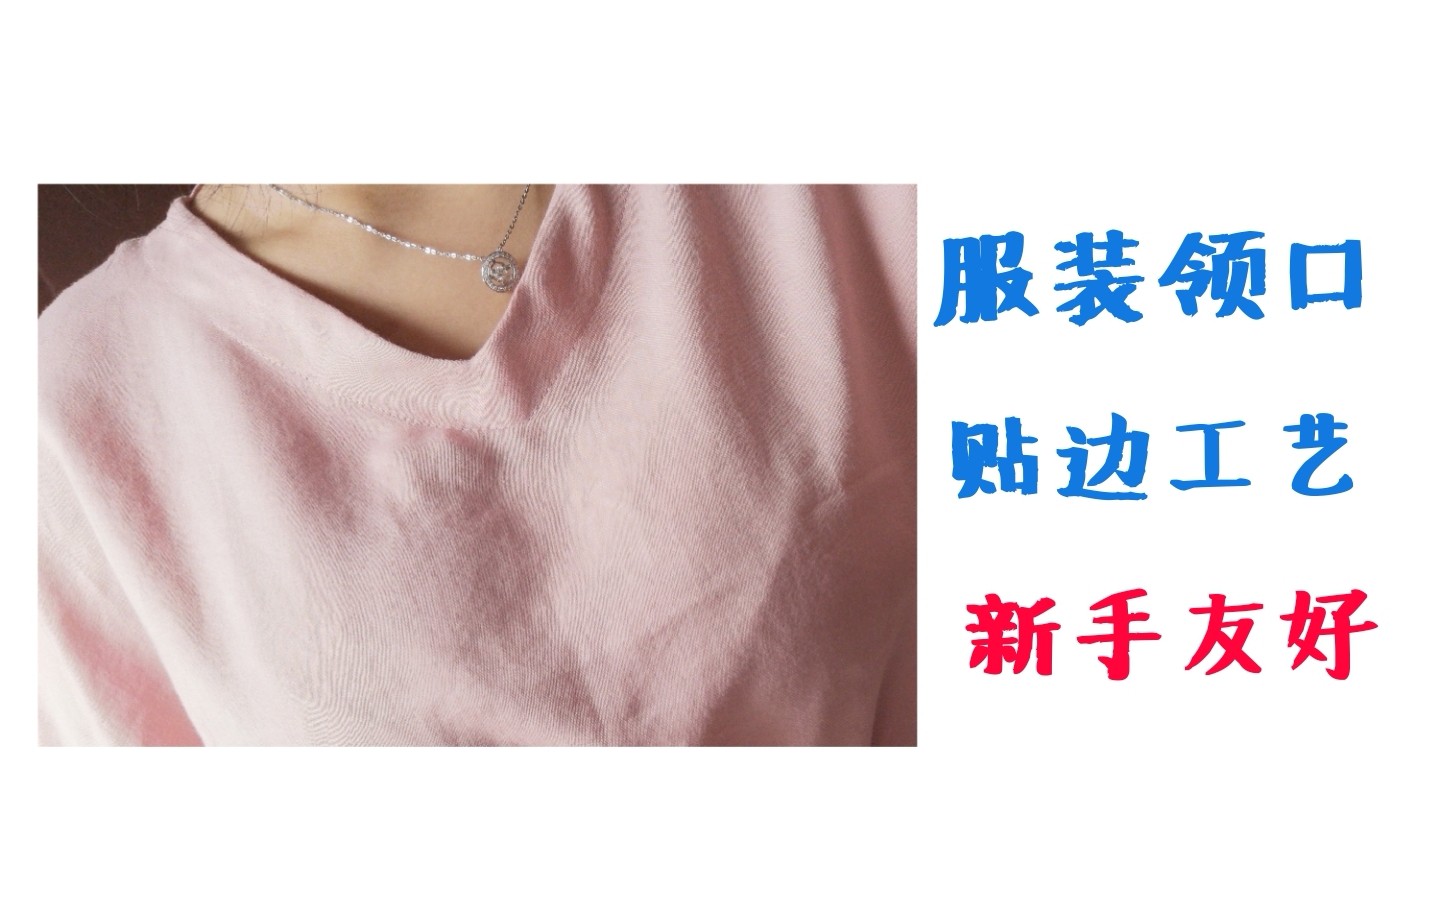 领短袖衬衫的图纸和缝制-服装服装制版技术-CFW服装设计网